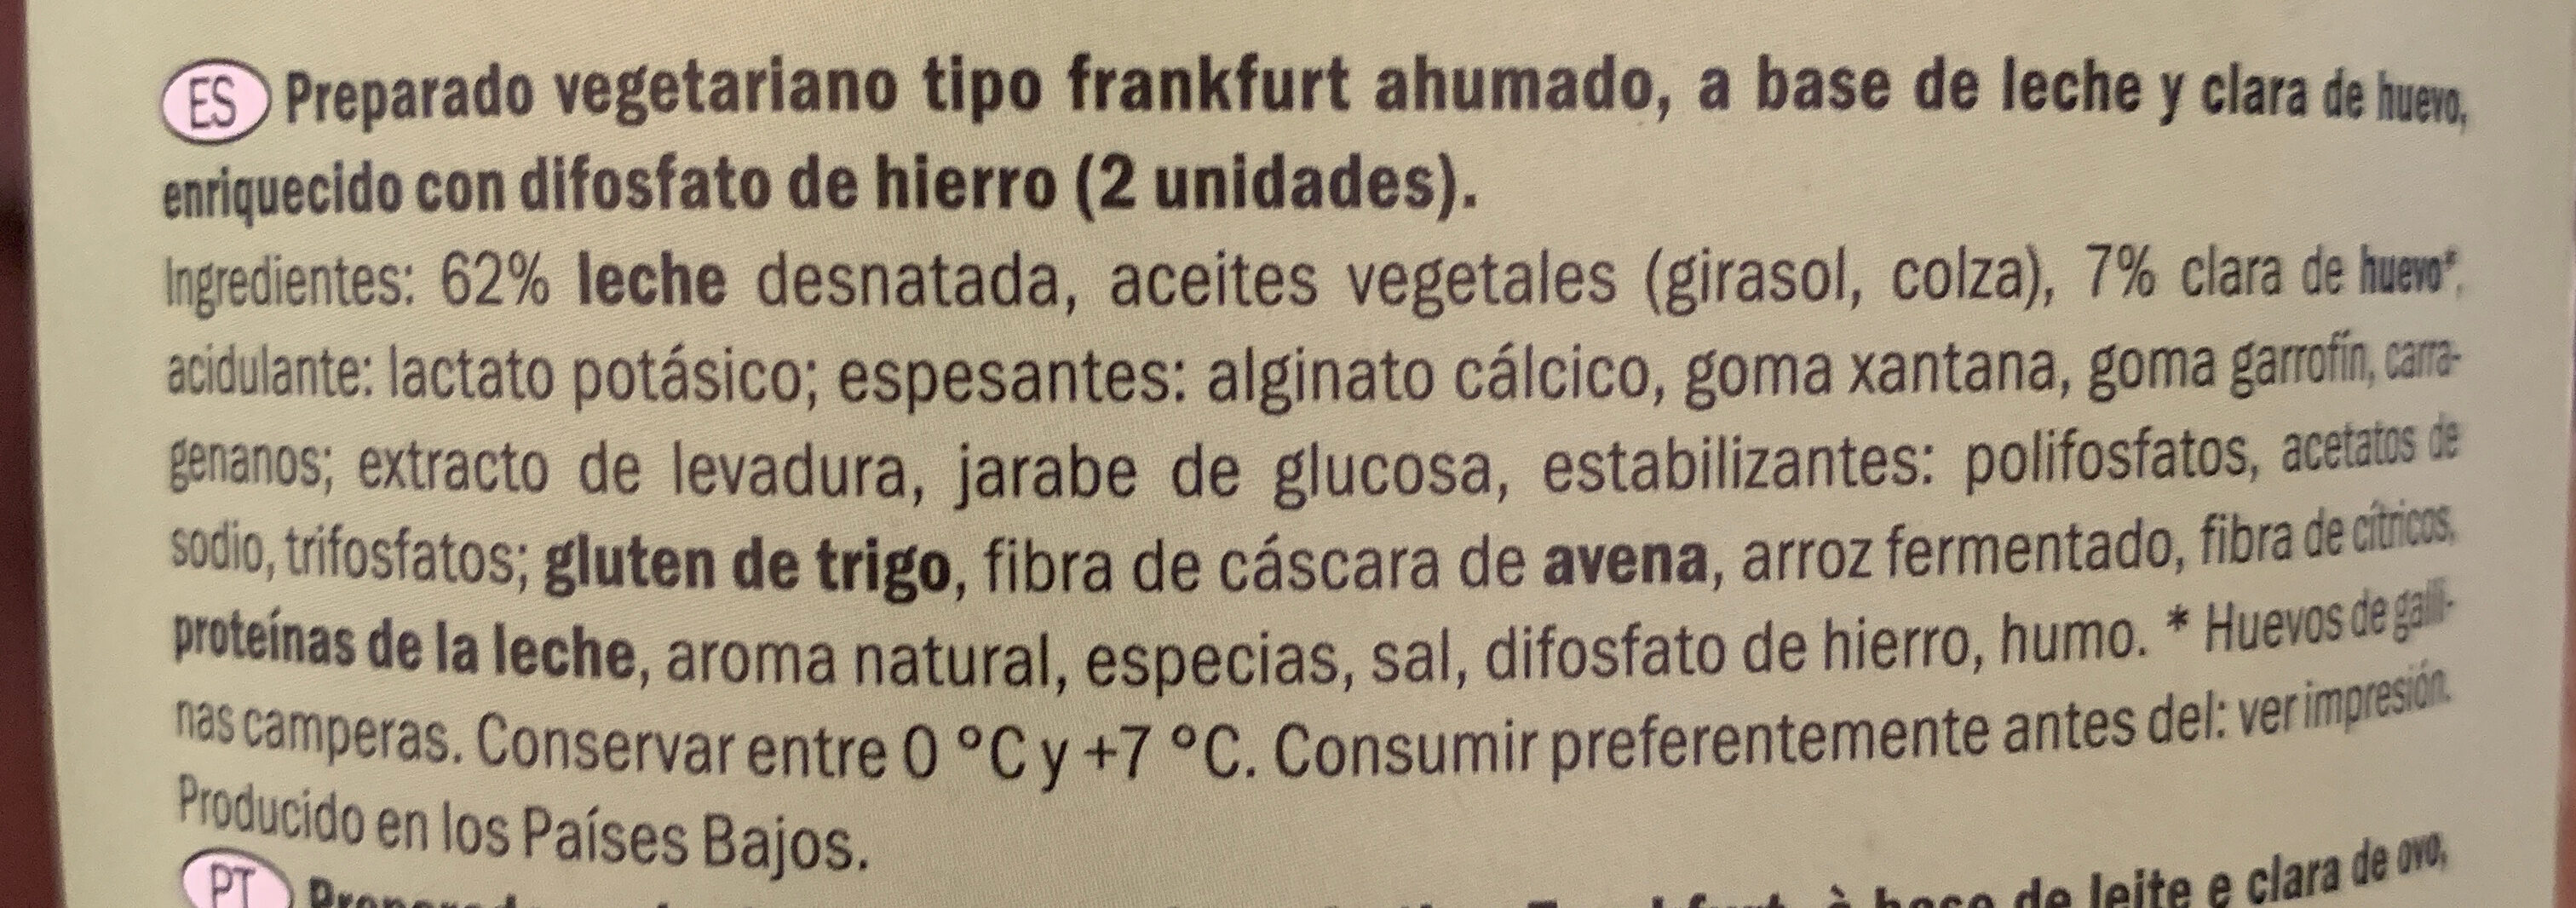 Preparado vegetariano tipo frankfurt ahumado - المكونات - es